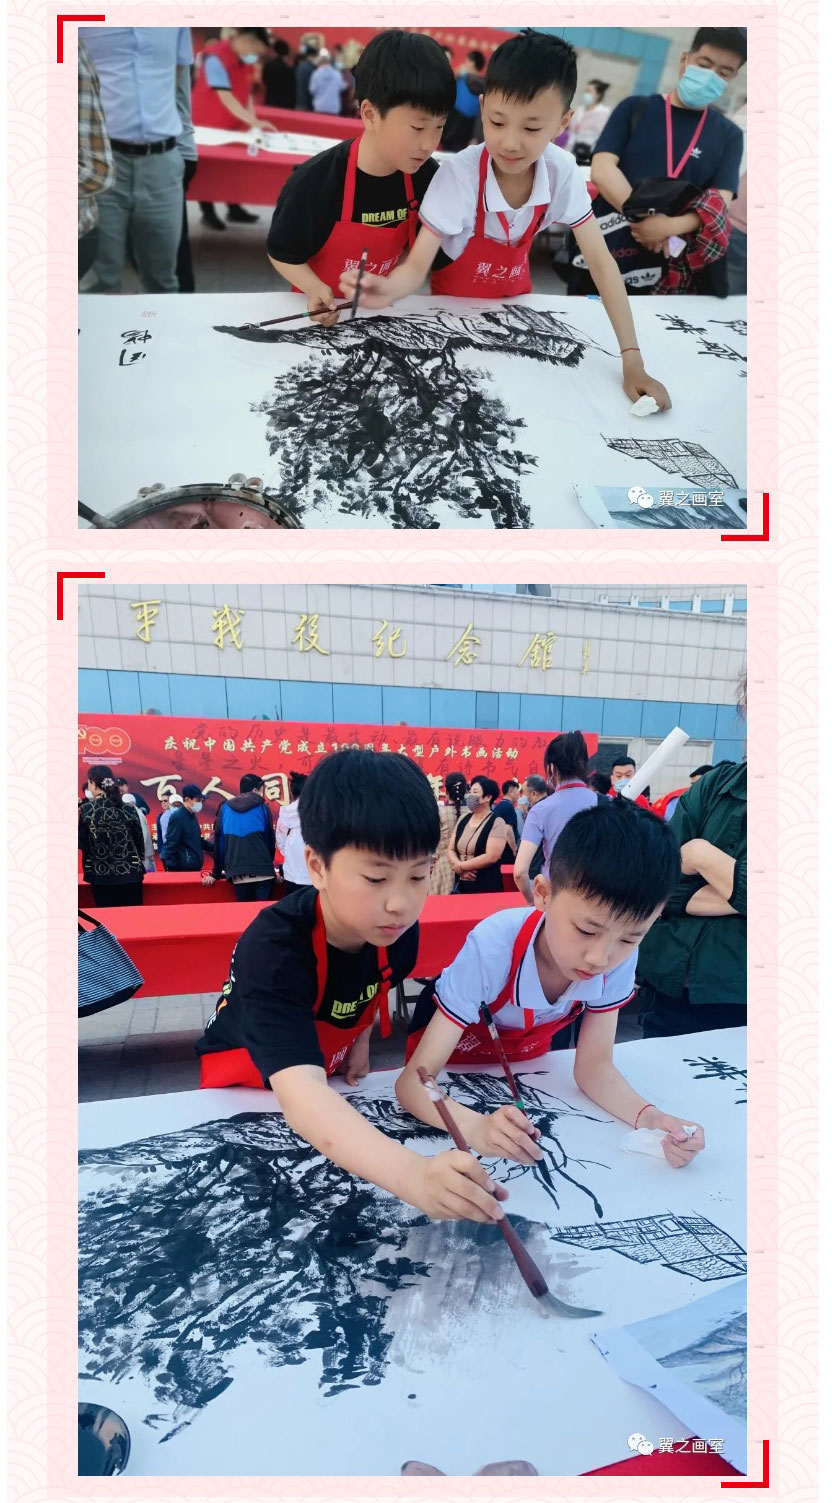 百人同书、百年辉煌-_-翼之画室参与庆祝中国共产党成立100-周年大型户外书画活动_08.jpg